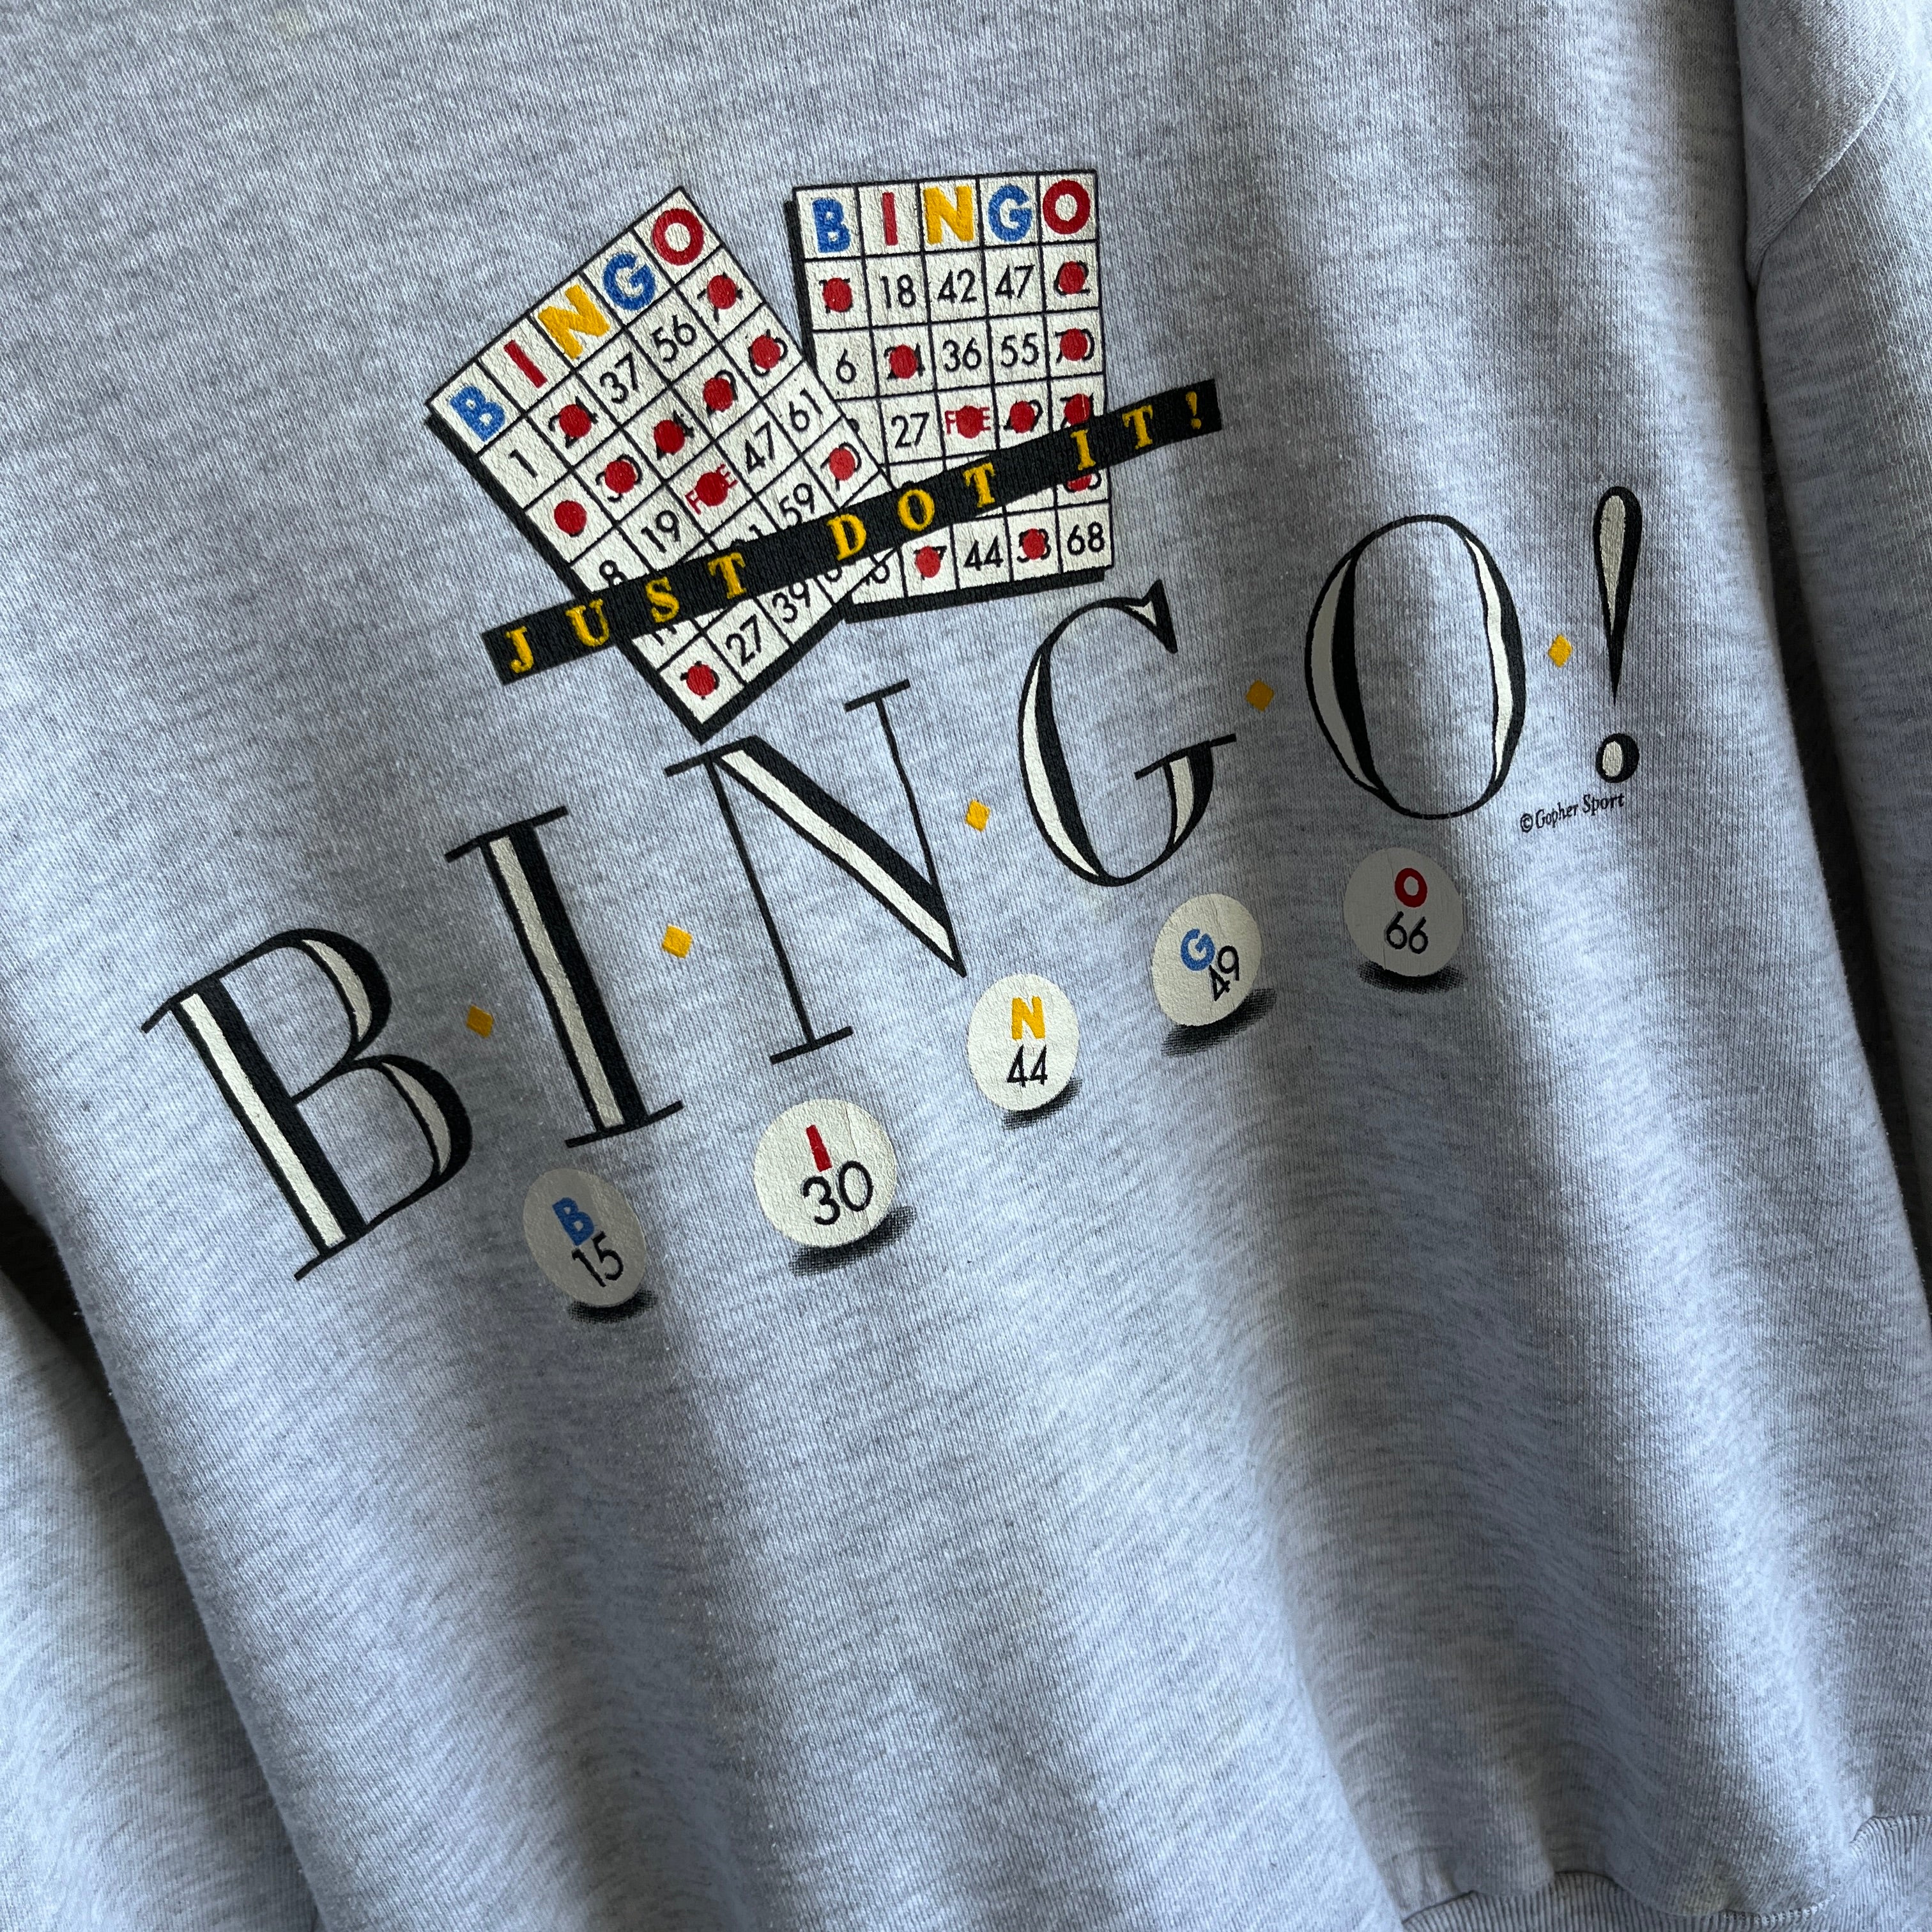 1980s Just Do It! Bingo Sweatshirt